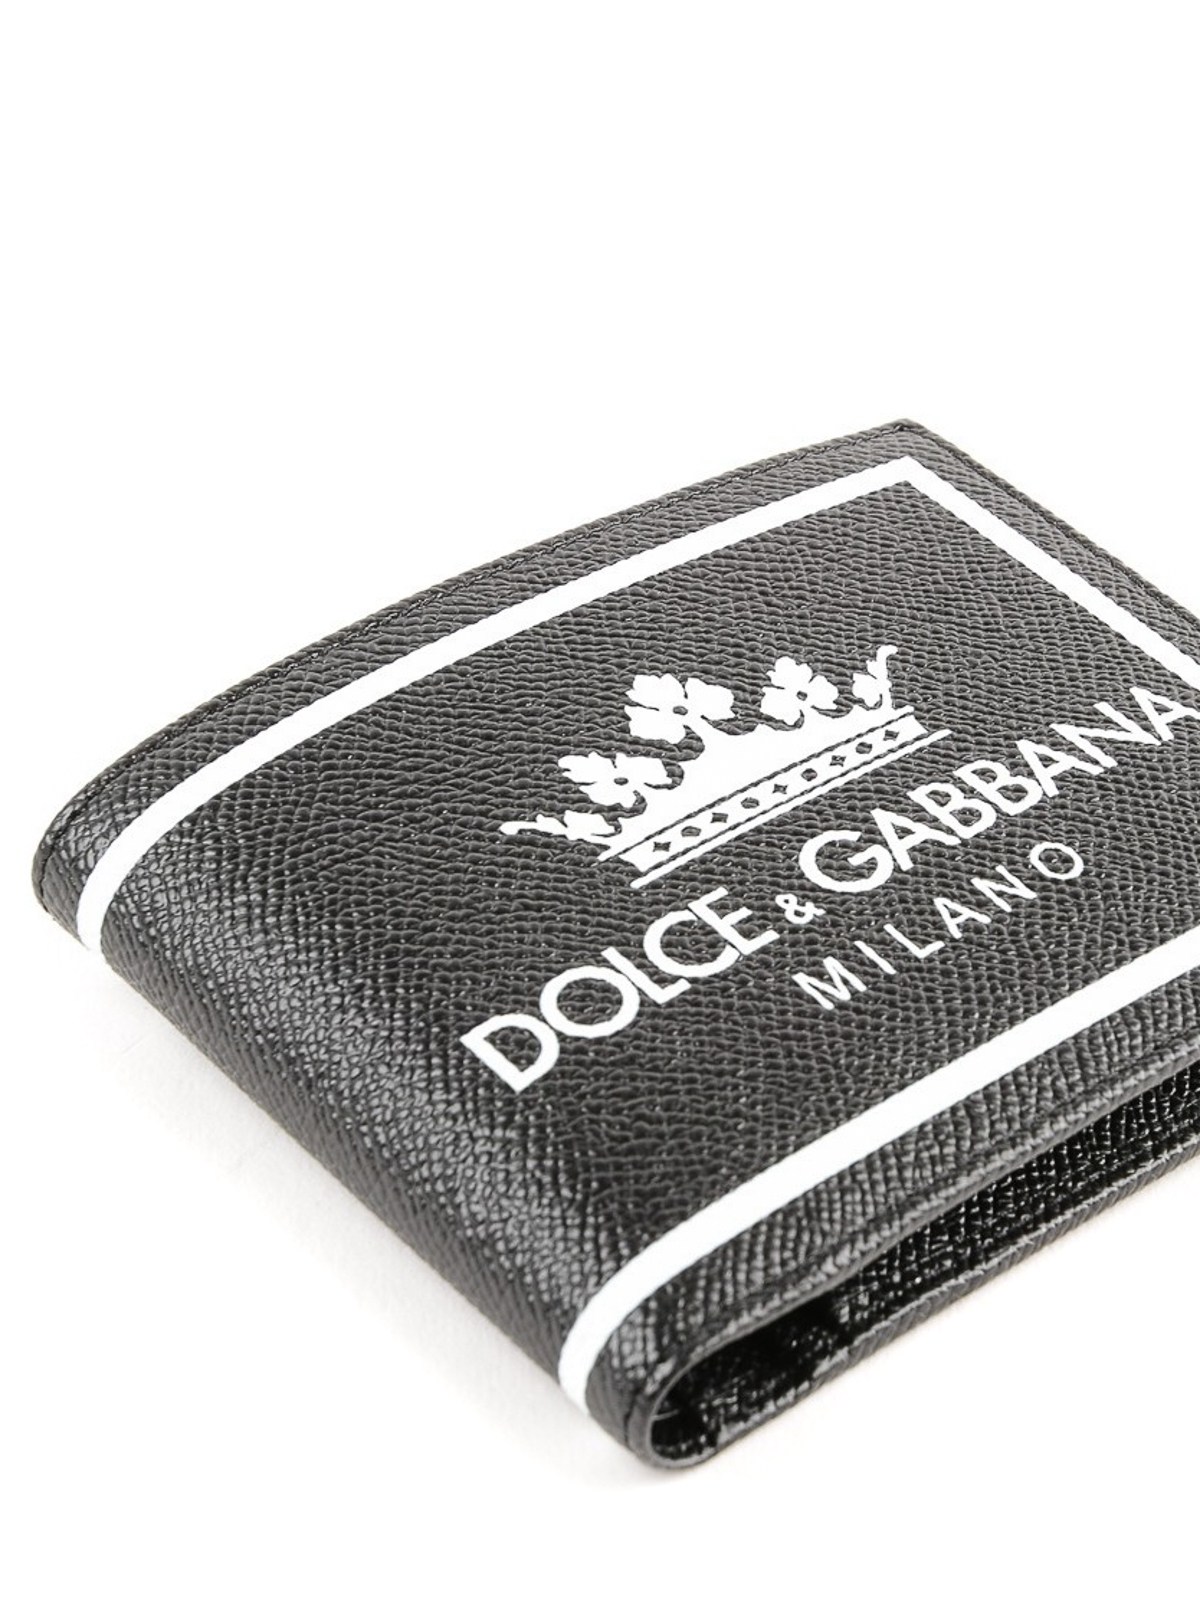 Dolce & Gabbana dauphine Wallet in White